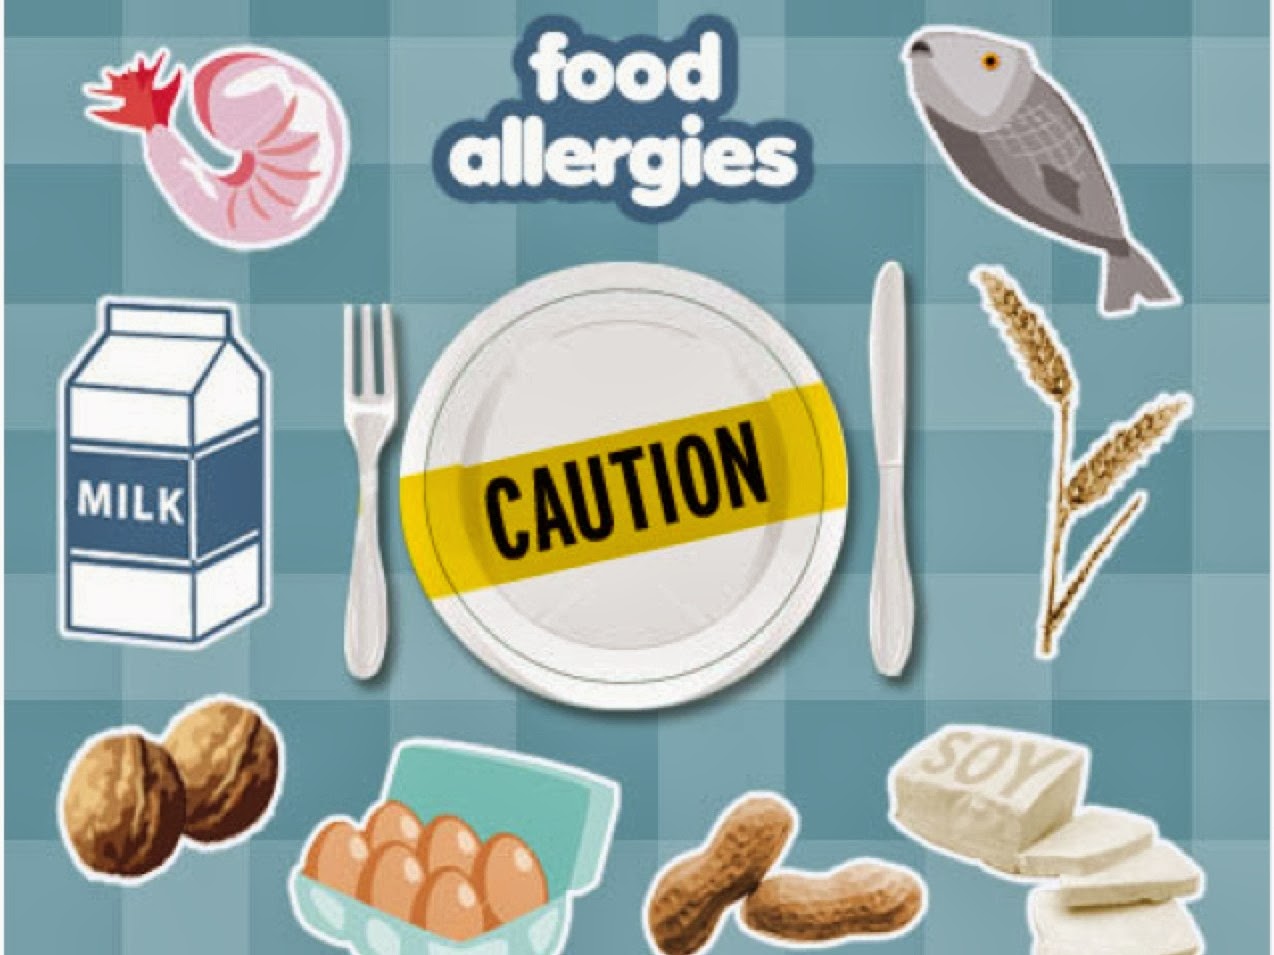 Ποια είναι η πιο συχνή διατροφική αλλεργία